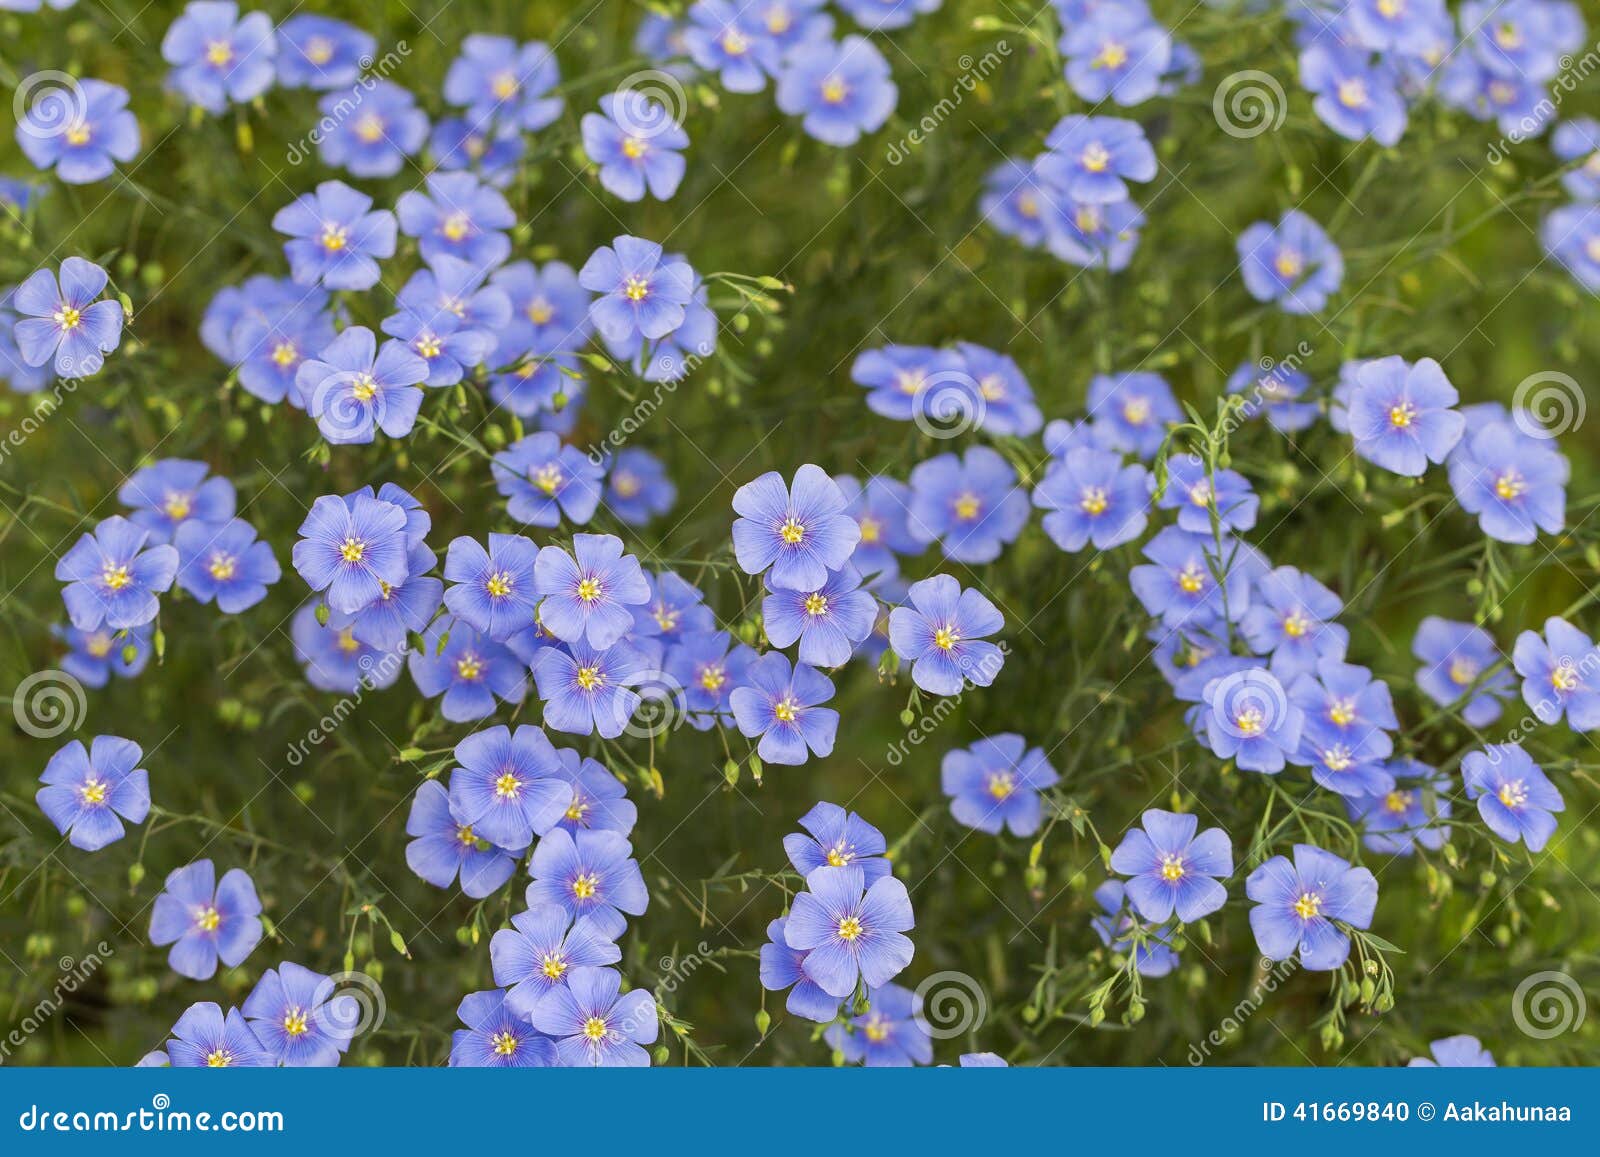 Cosmos bleu de floraison photo stock. Image du cosmos - 41669840